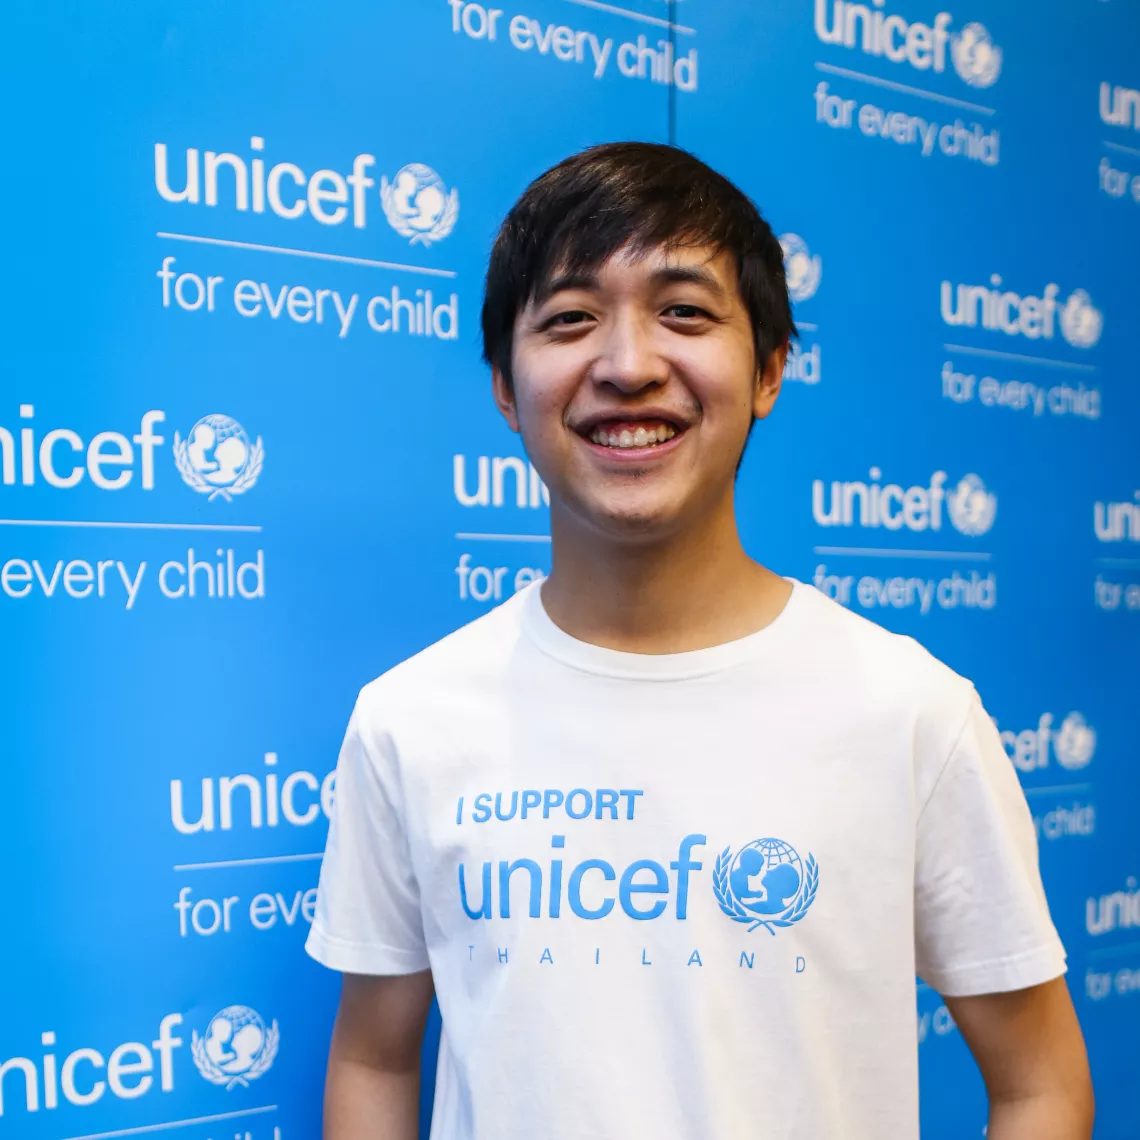 ชายหนุ่มใส่เสื้อยืนสีขาว มีสกรีนเขียนว่า "I support UNICEF Thailand" กำลังยืนอยู่หน้าแบ็กดรอปสีฟ้าของยูนิเซฟ